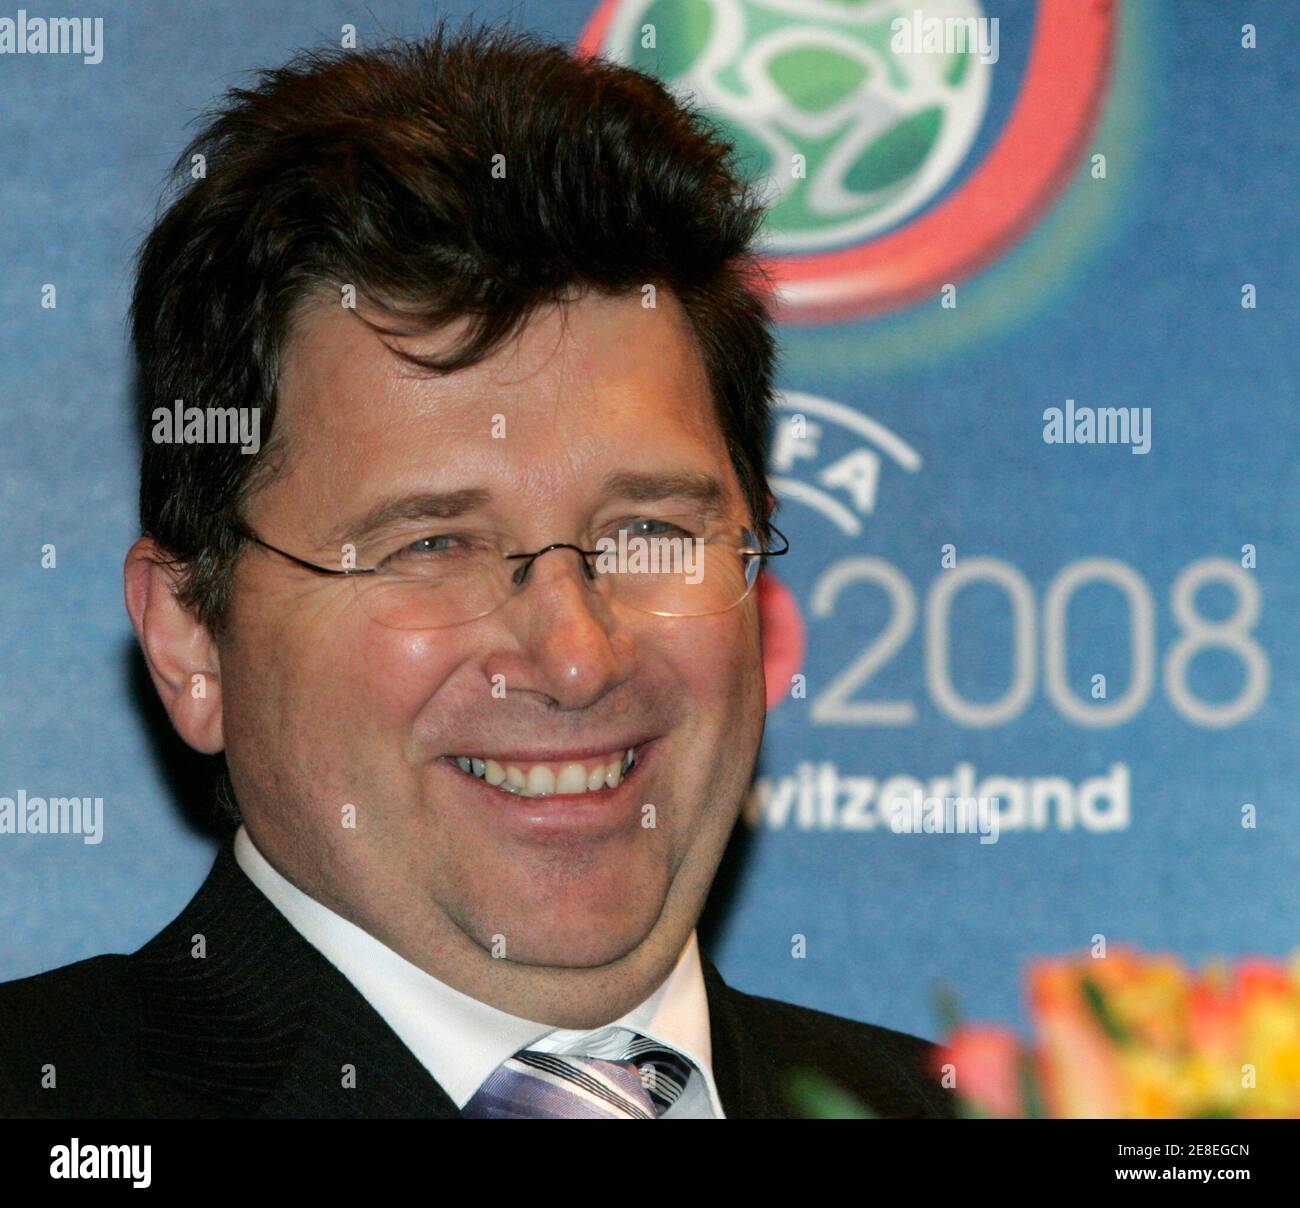 Martin Kallen, Euro 2008 chief Operations Officer, lächelt während der feierlichen Unterzeichnung des Vertrages Stadt Gastgeber für die Euro 2008-Fußball-Turnier in Wien 24. Januar 2007.  REUTERS/Herwig Prammer (Österreich) Stockfoto